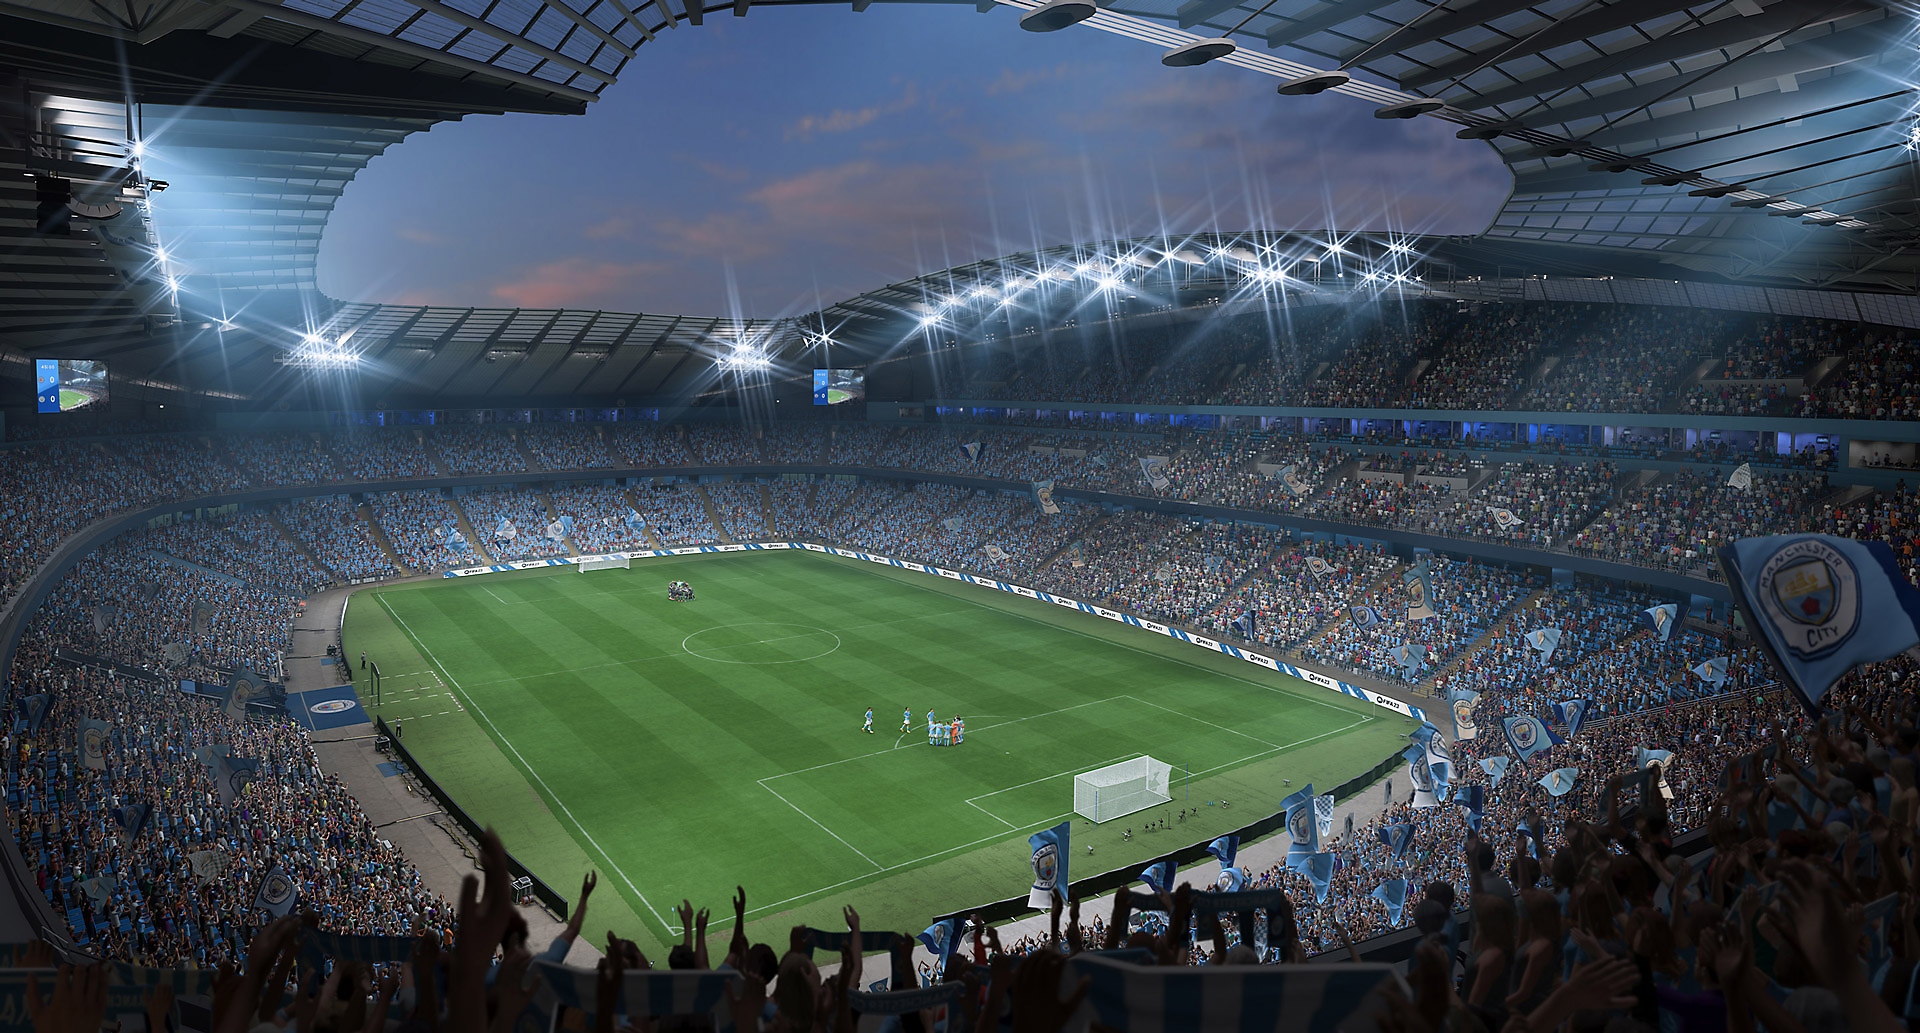 Video de EA Sports FIFA 23 que muestra un estadio y fanáticos alentando a los equipos